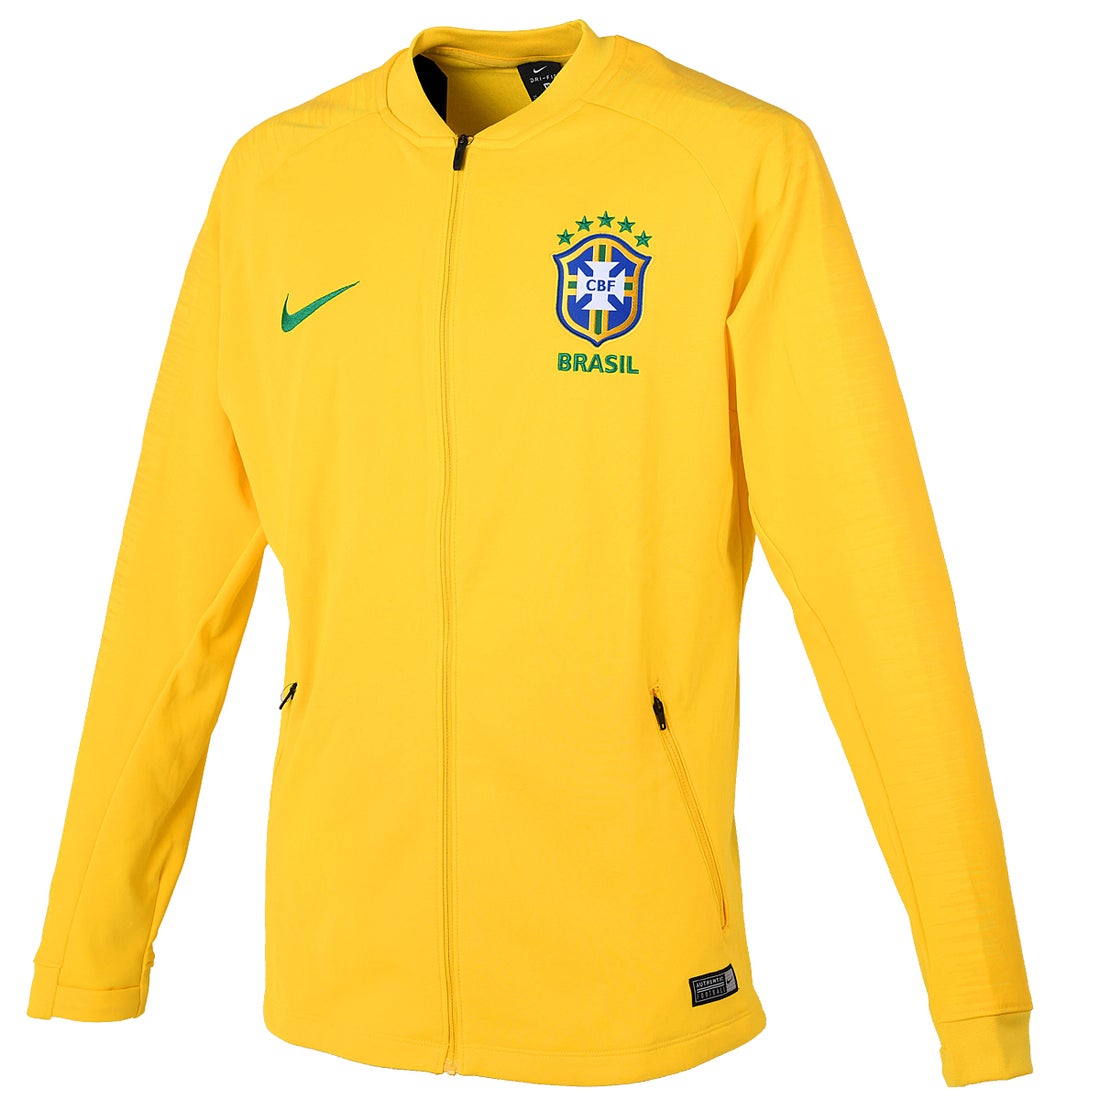 ブラジル代表 2018 アンセムジャケット(イエロー)